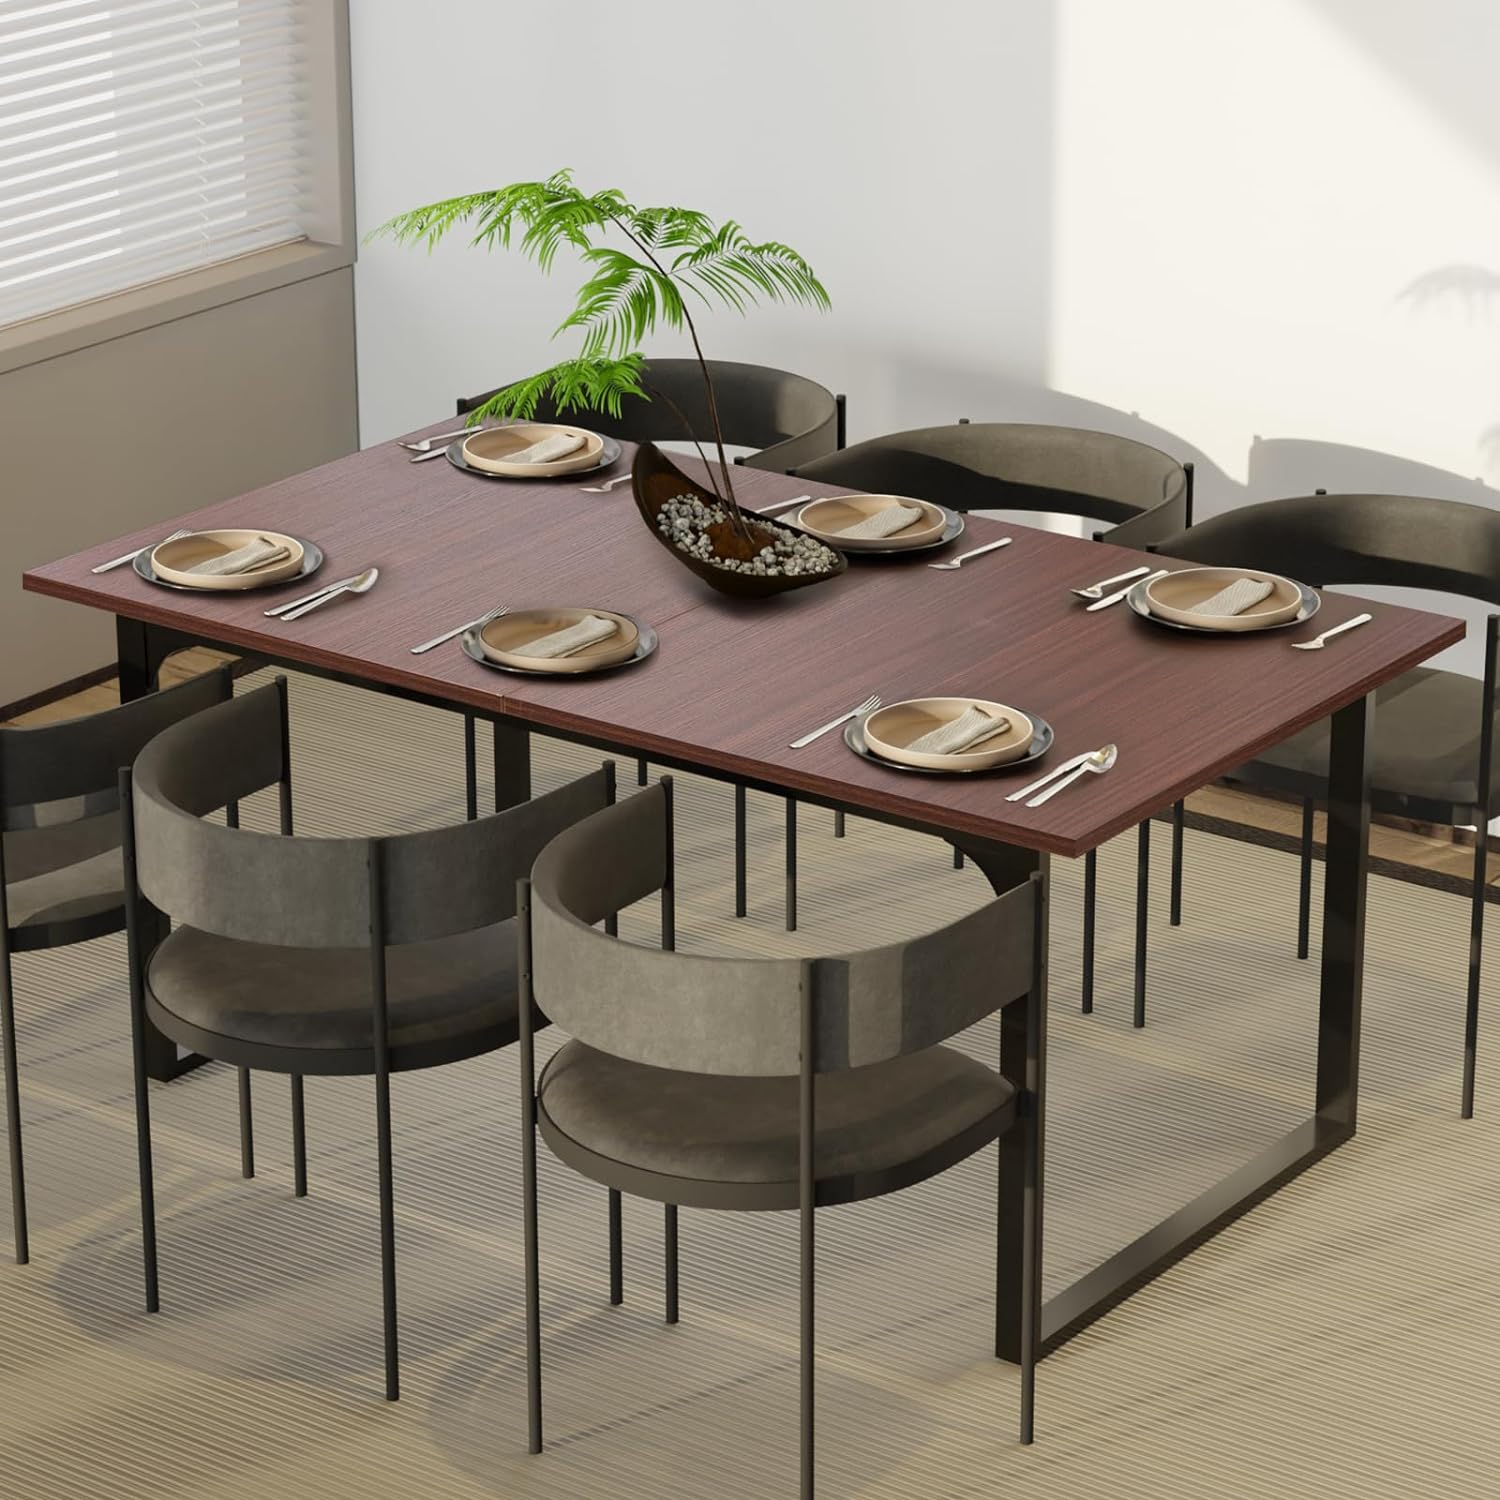 Mesa de comedor extensible, mesa de cocina moderna expandible de 70.86 pulgadas